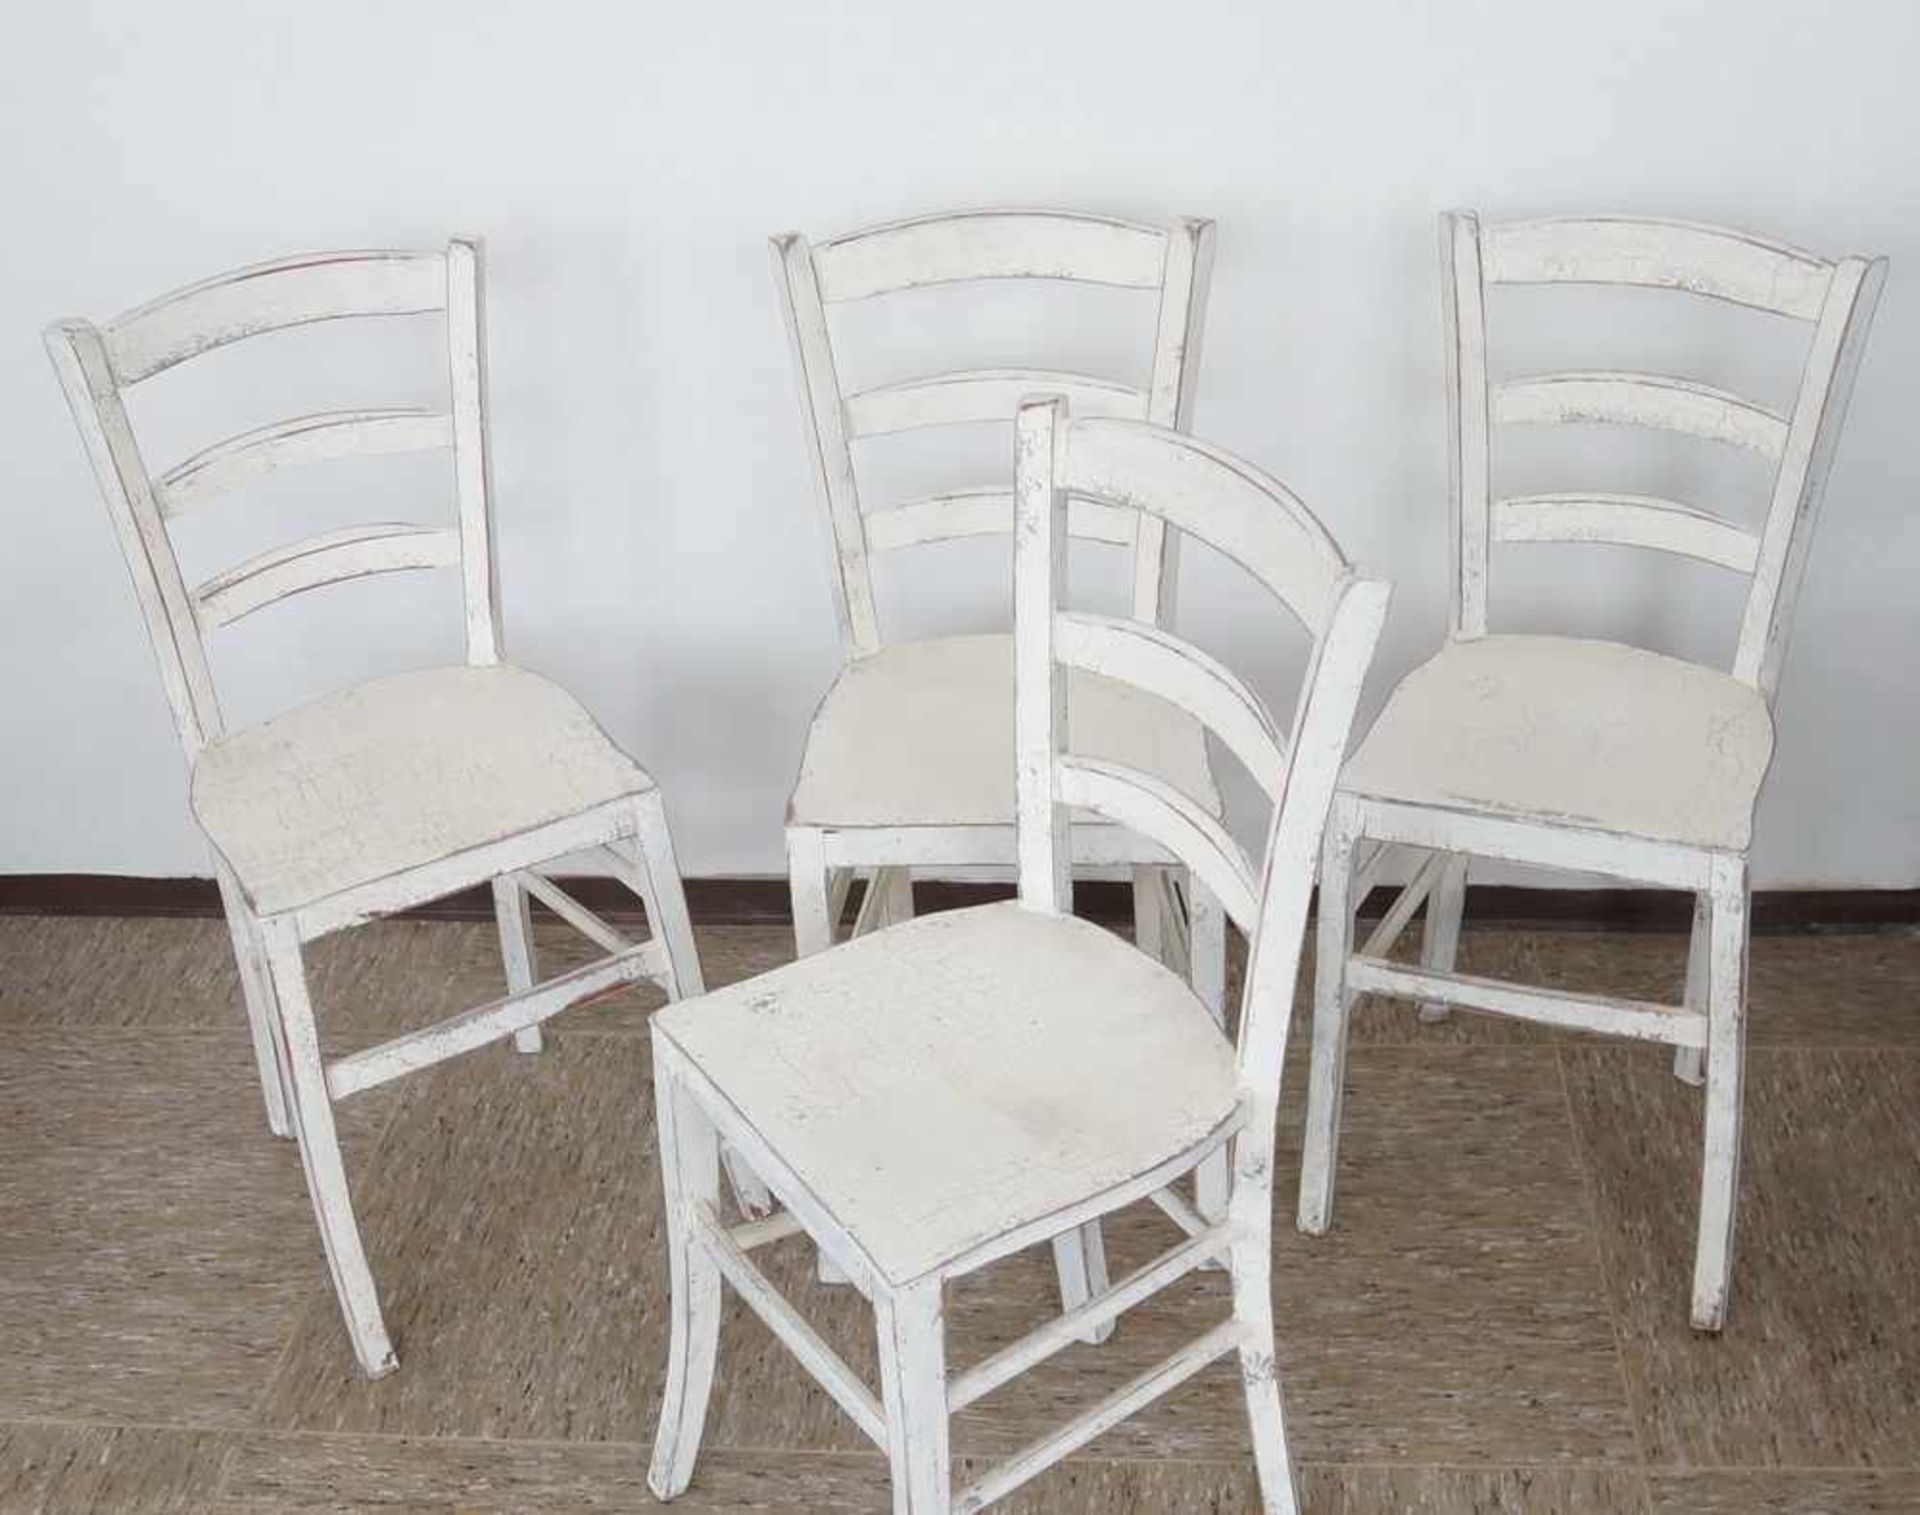 Vier Jugendstil Stühle, Weichholz, weiss gefasst, um 1900, 87x37x35xSH 47 cm- - -24.00 % buyer's - Bild 2 aus 5